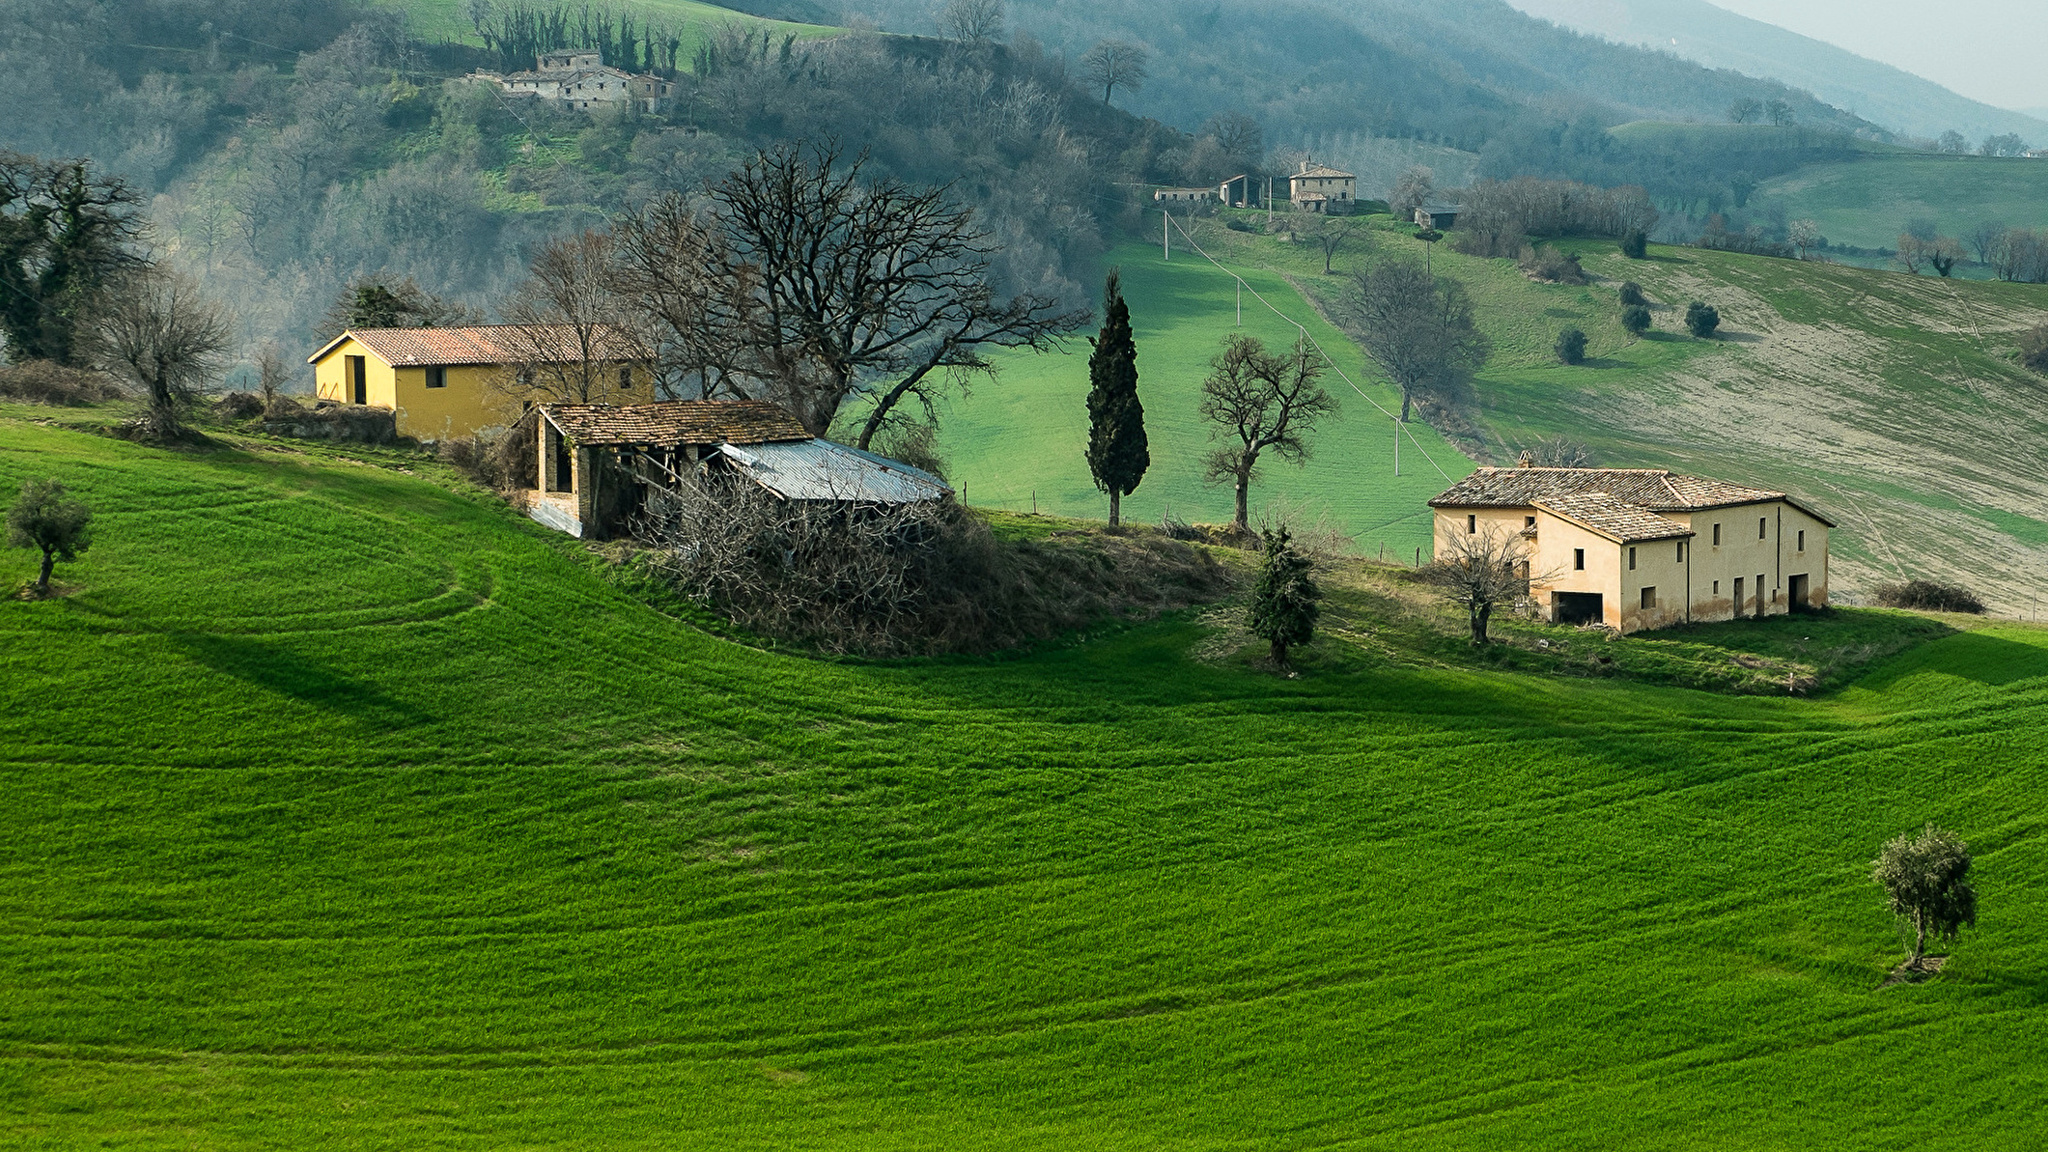 Hills village. Тоскана Италия. Пьемонт Италия природа. Италия Тоскана деревни. Италия холмы домики Тоскана.